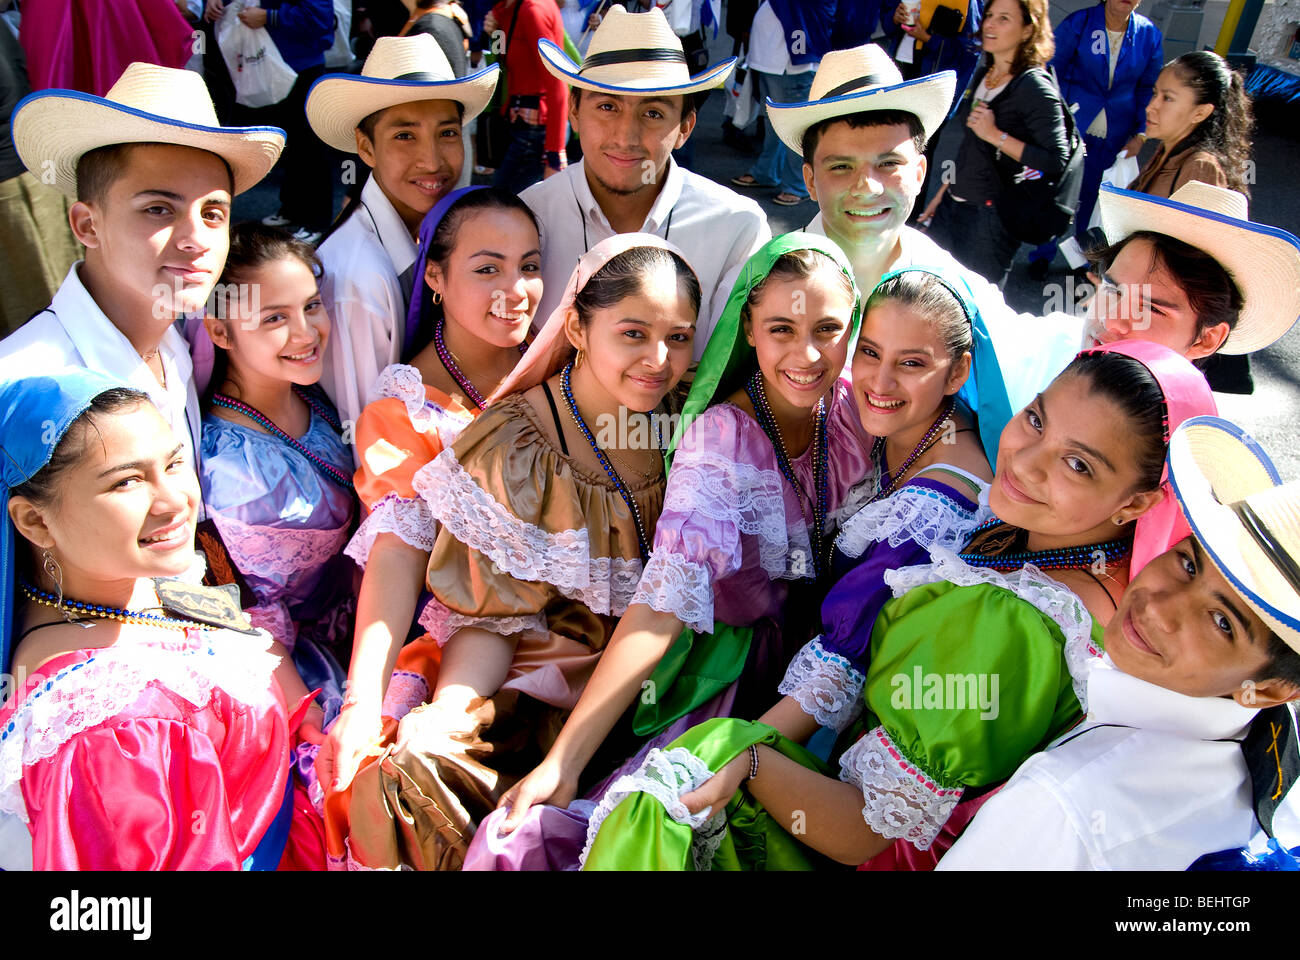 Celebrate Hispanic Heritage Month!, by Neythri Global, Neythri